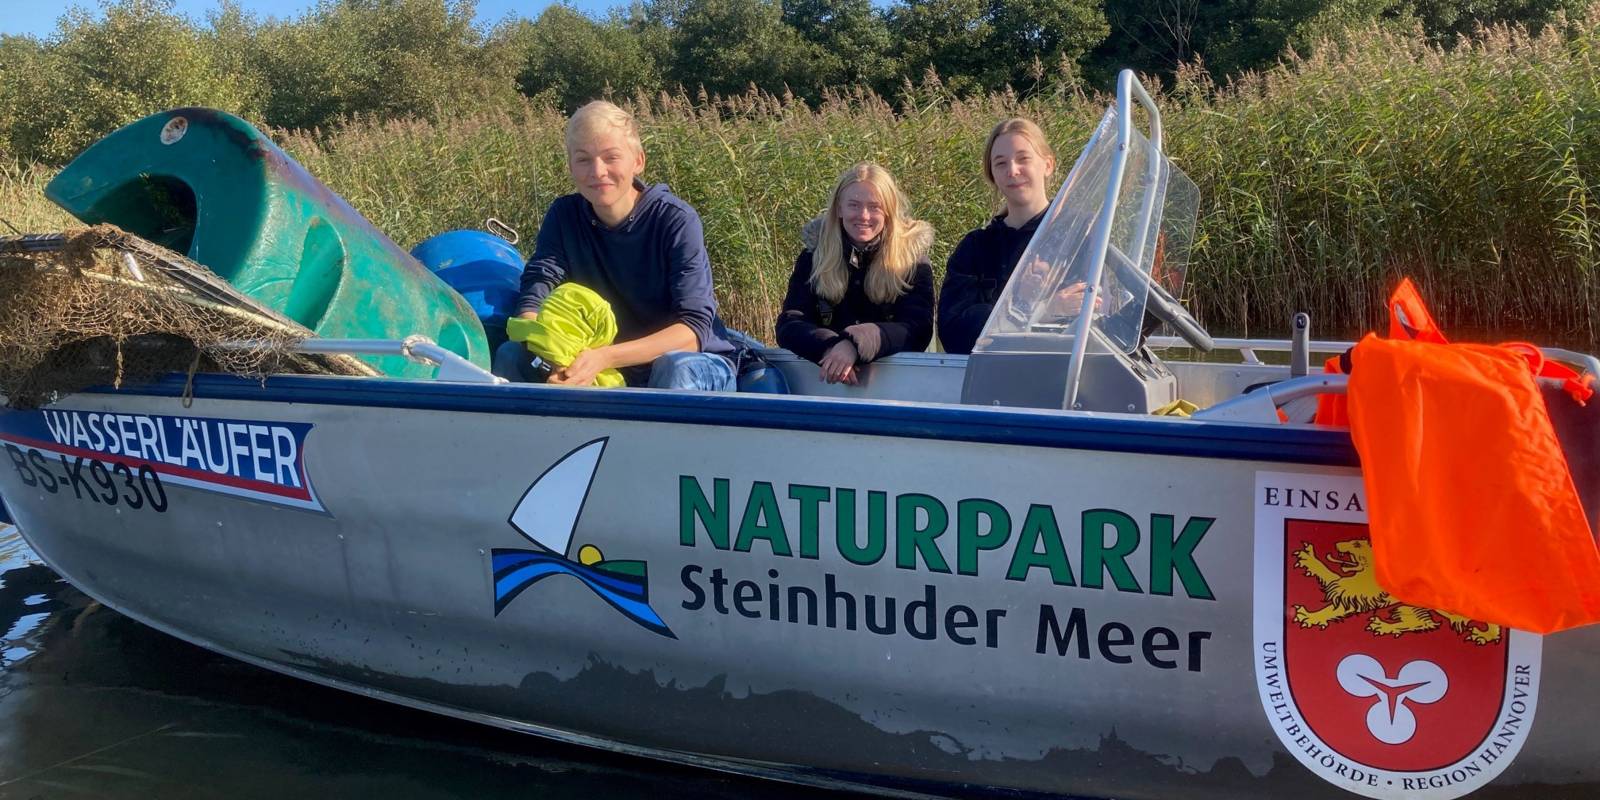 Drei junge Menschen in einem Boot auf dem "Naturpark Steinhuder Meer" steht